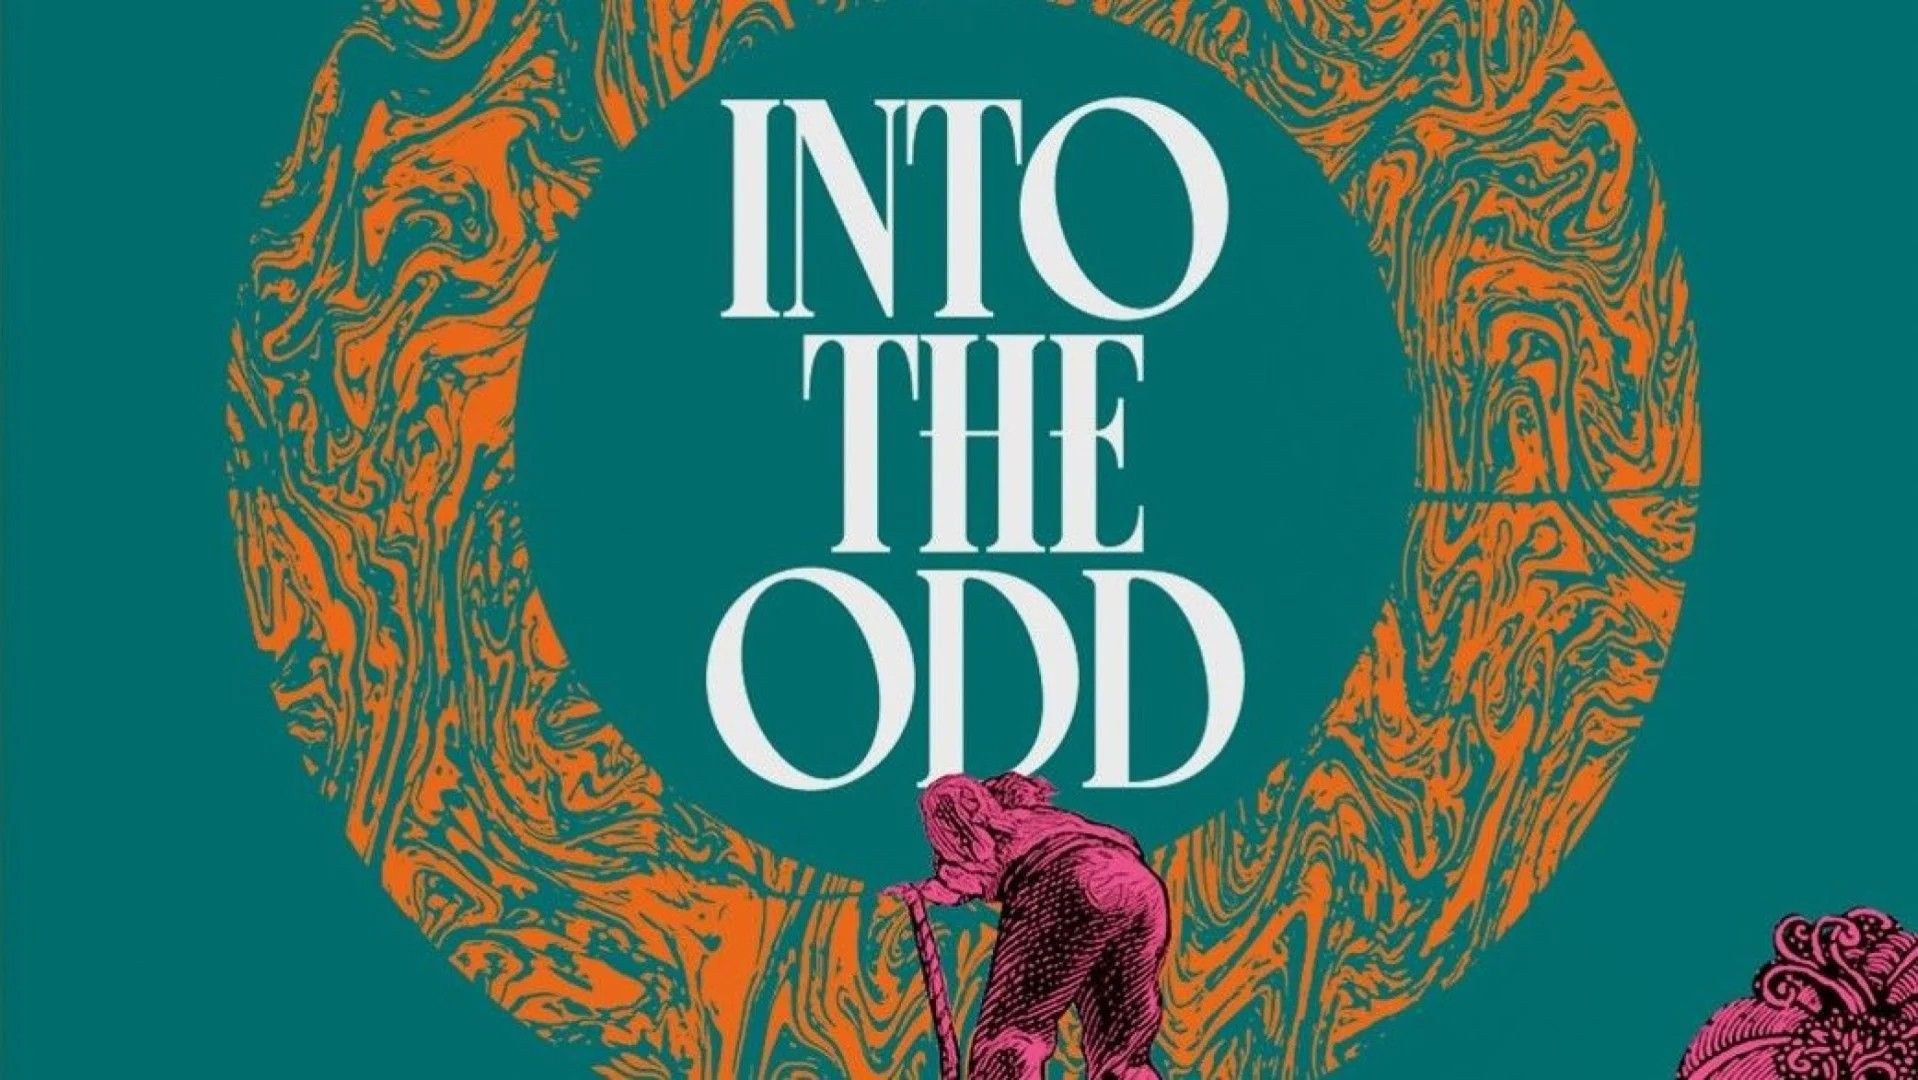 Em The Odd Remastered Key Art mostrando o título cercado por um círculo laranja, um homem em tons de rosa é mostrado rastejando em direção ao texto.